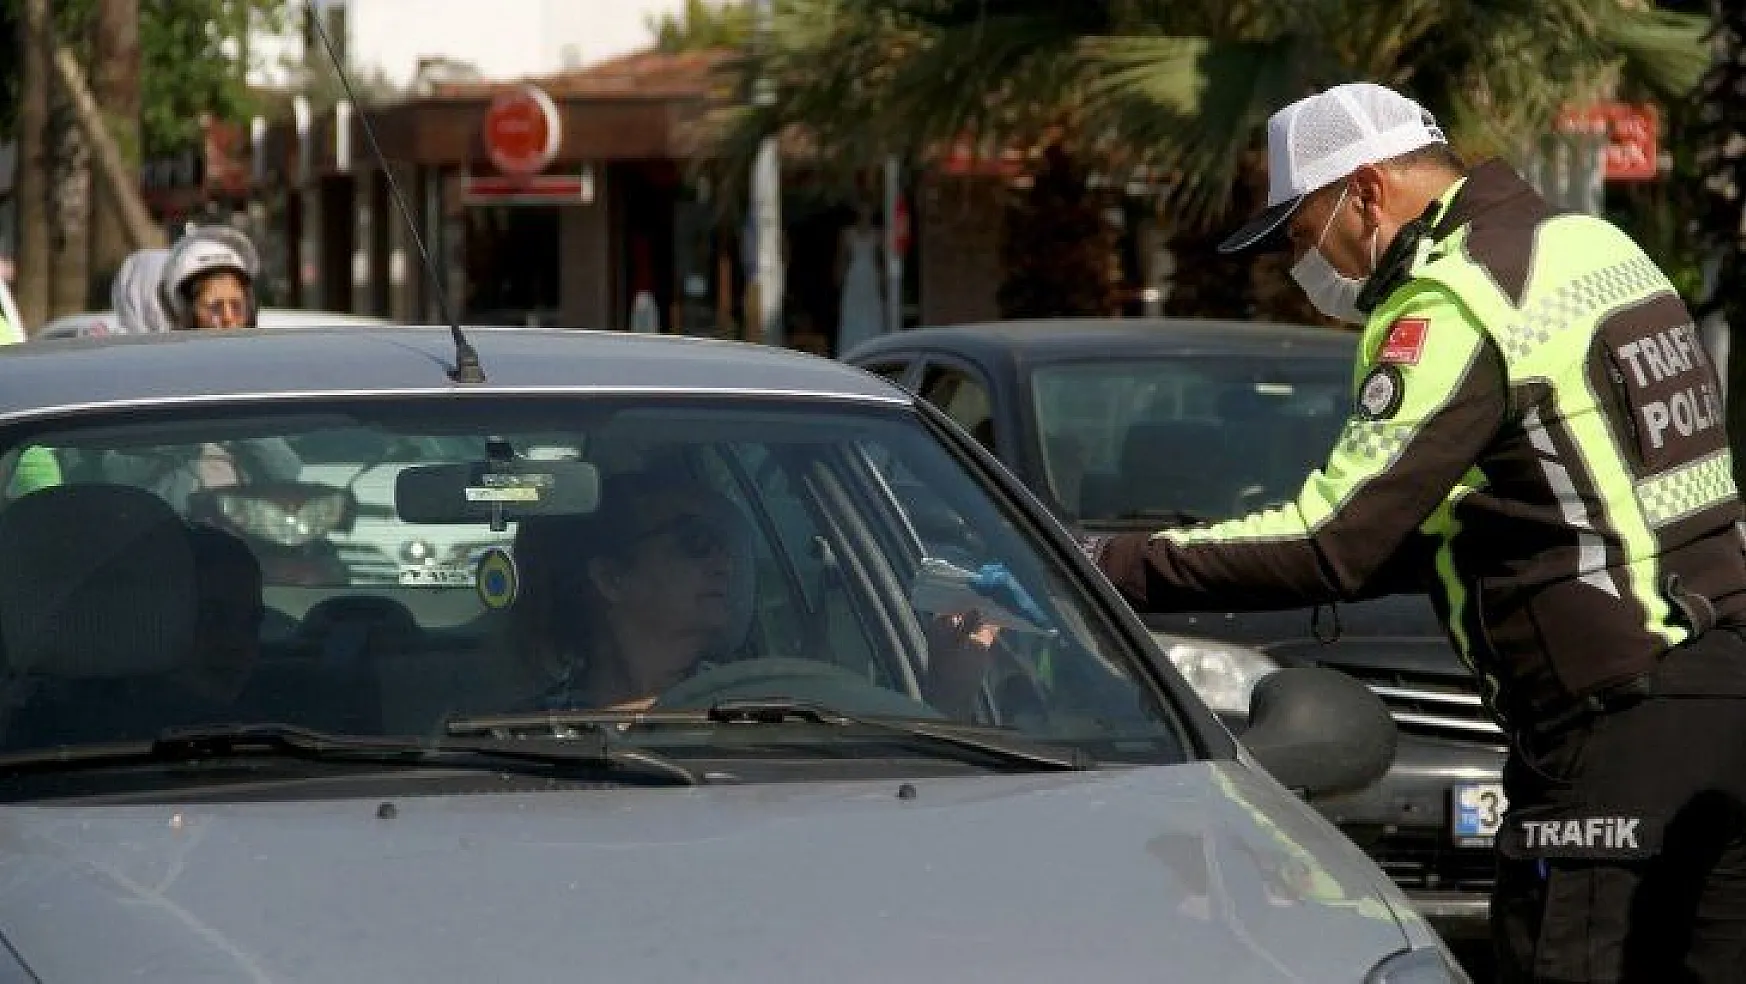 Fethiye'de trafik polisleri maske ve eldiven dağıttı